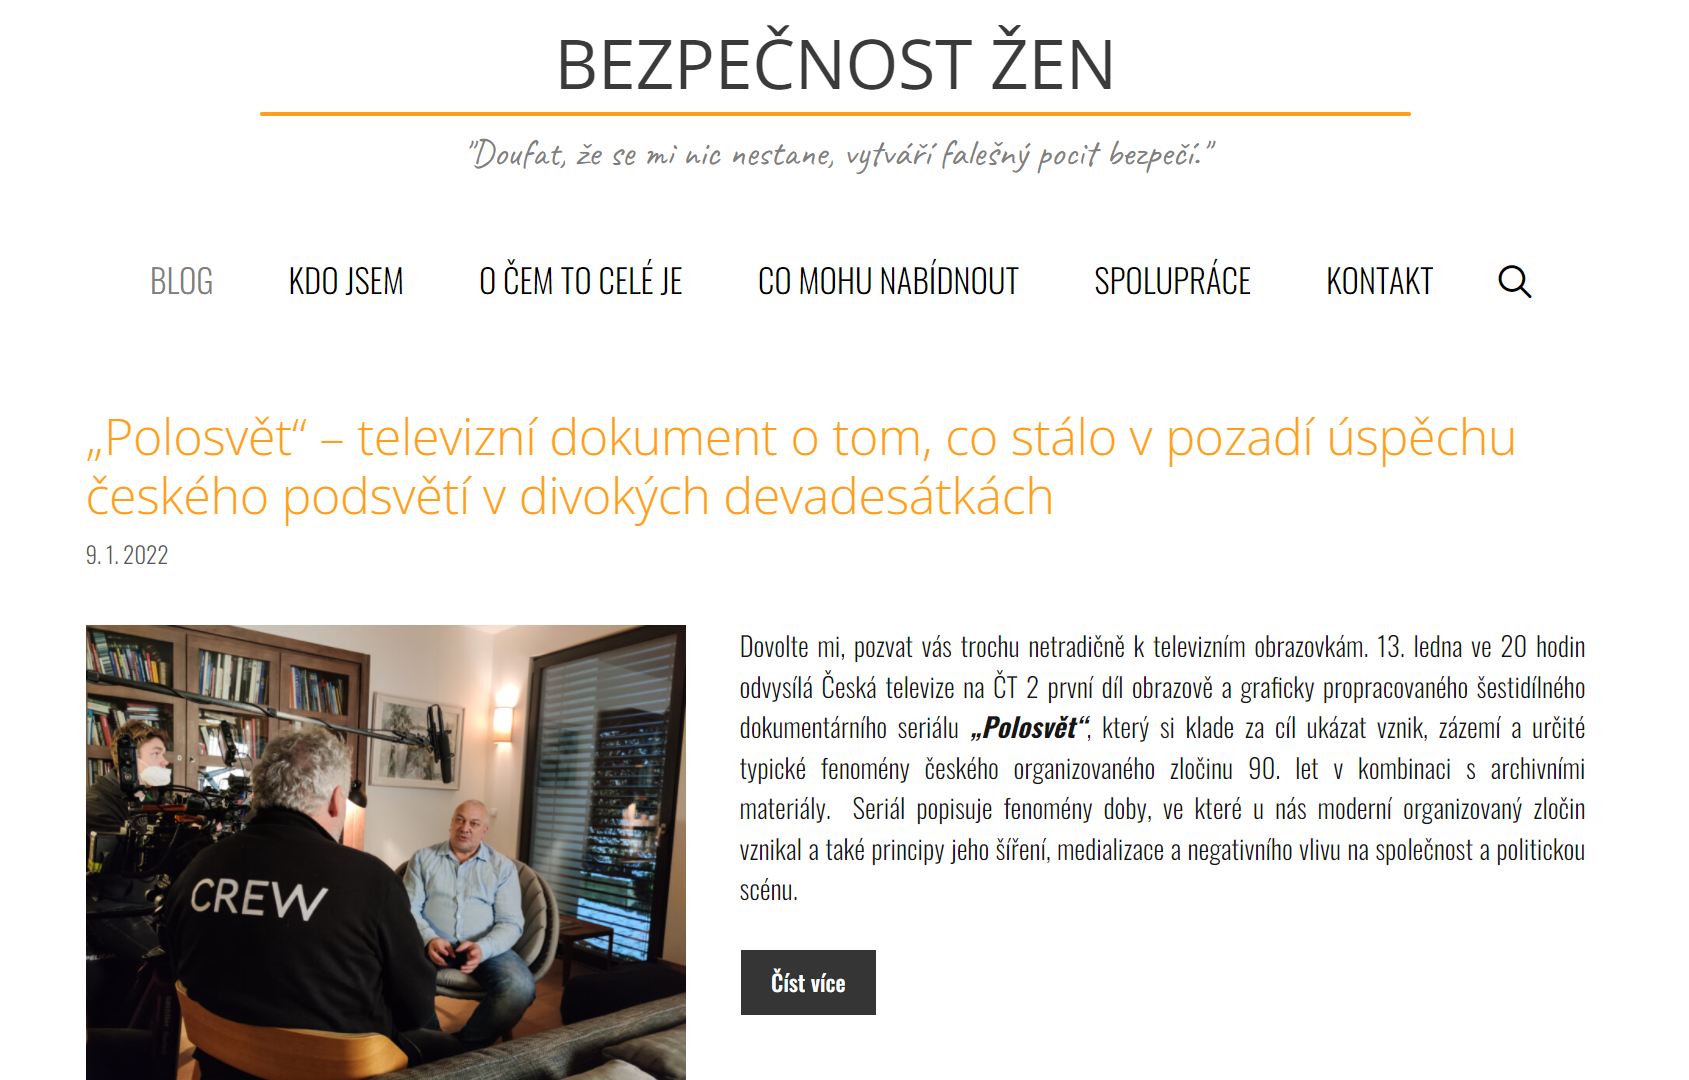 www.bezpecnostzen.cz